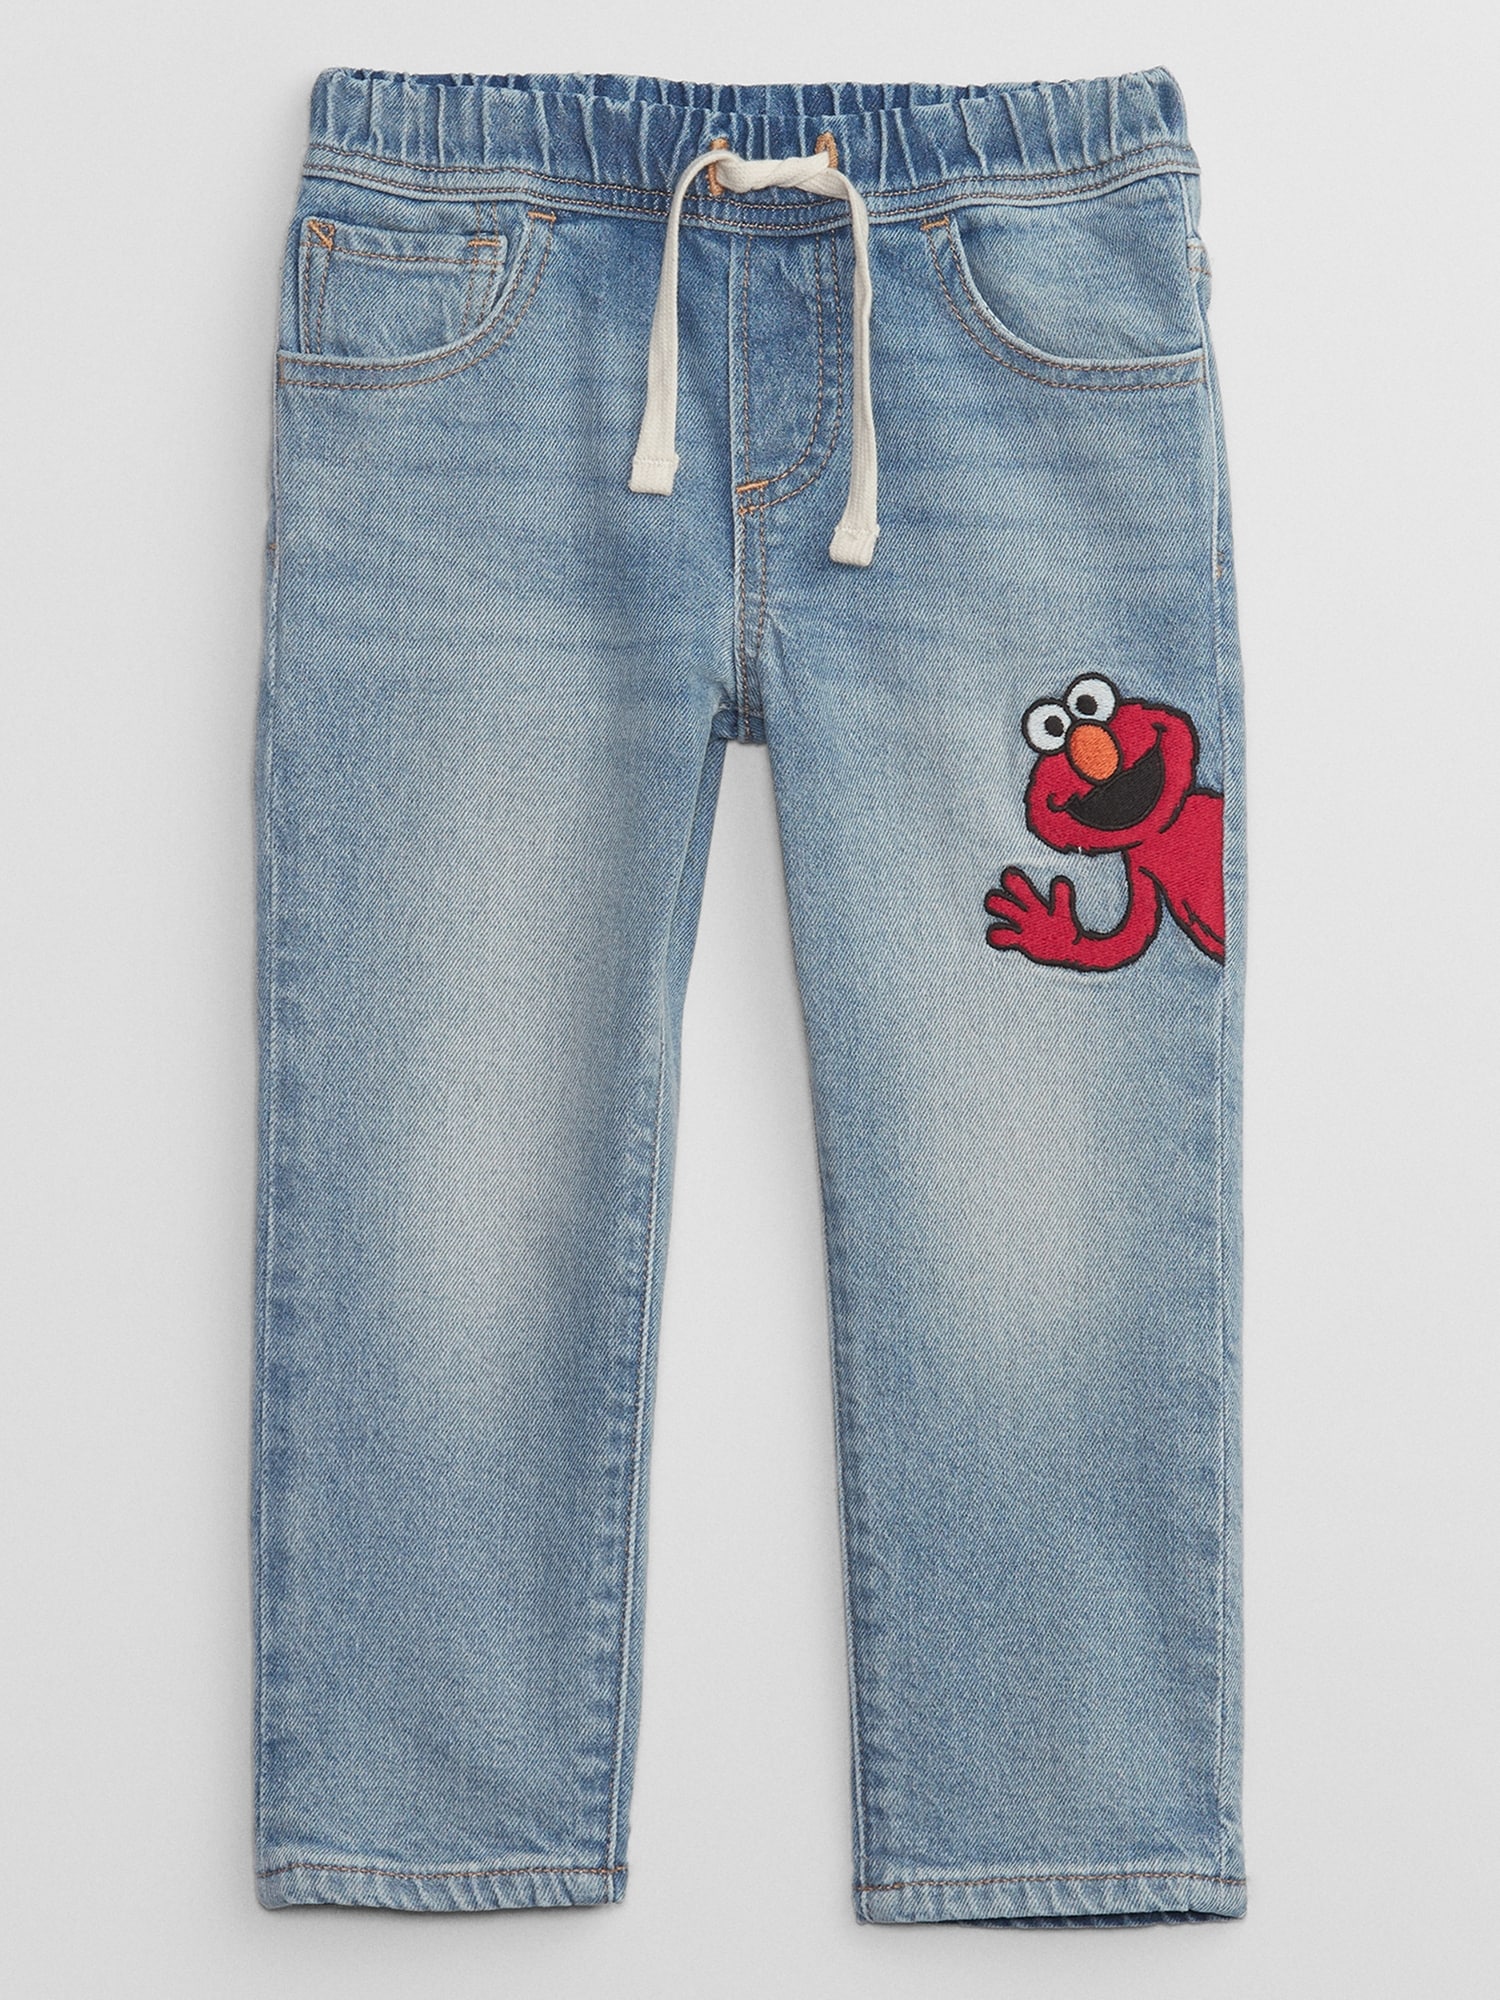 babyGap | Sesame Street Slim Pull-On Jeans